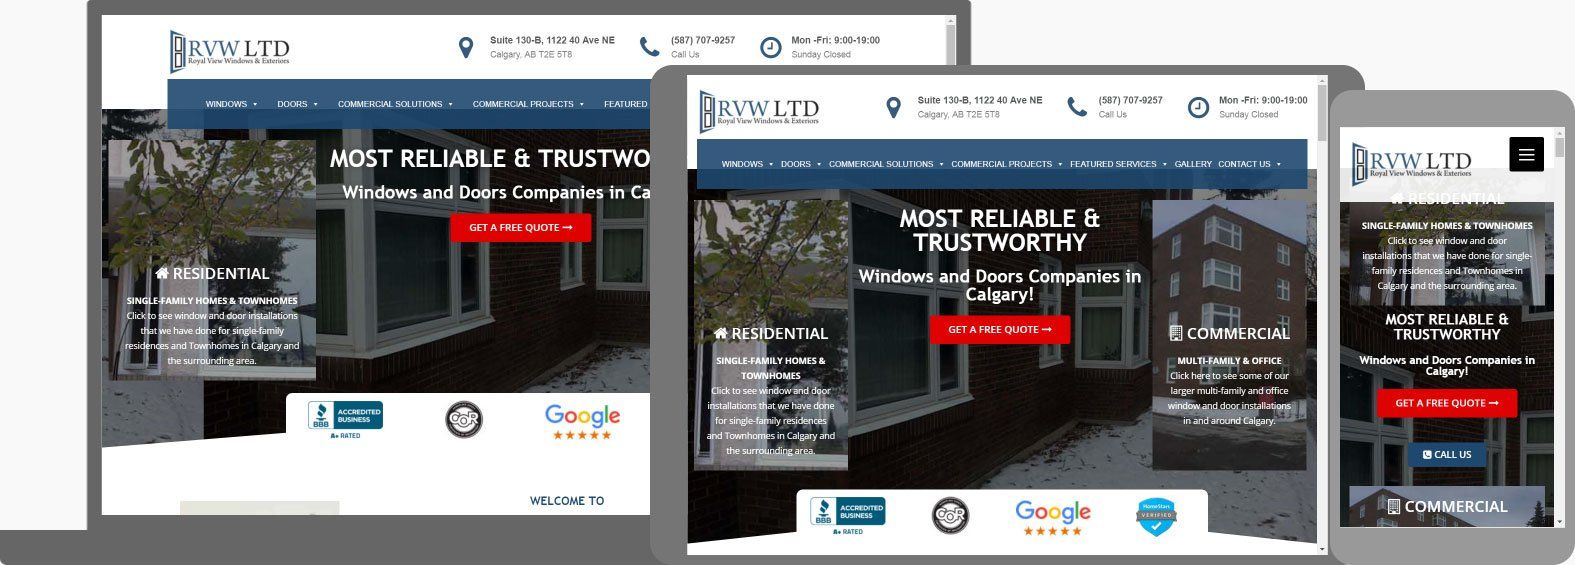 Website Design For Manufacturers - RVW Ltd